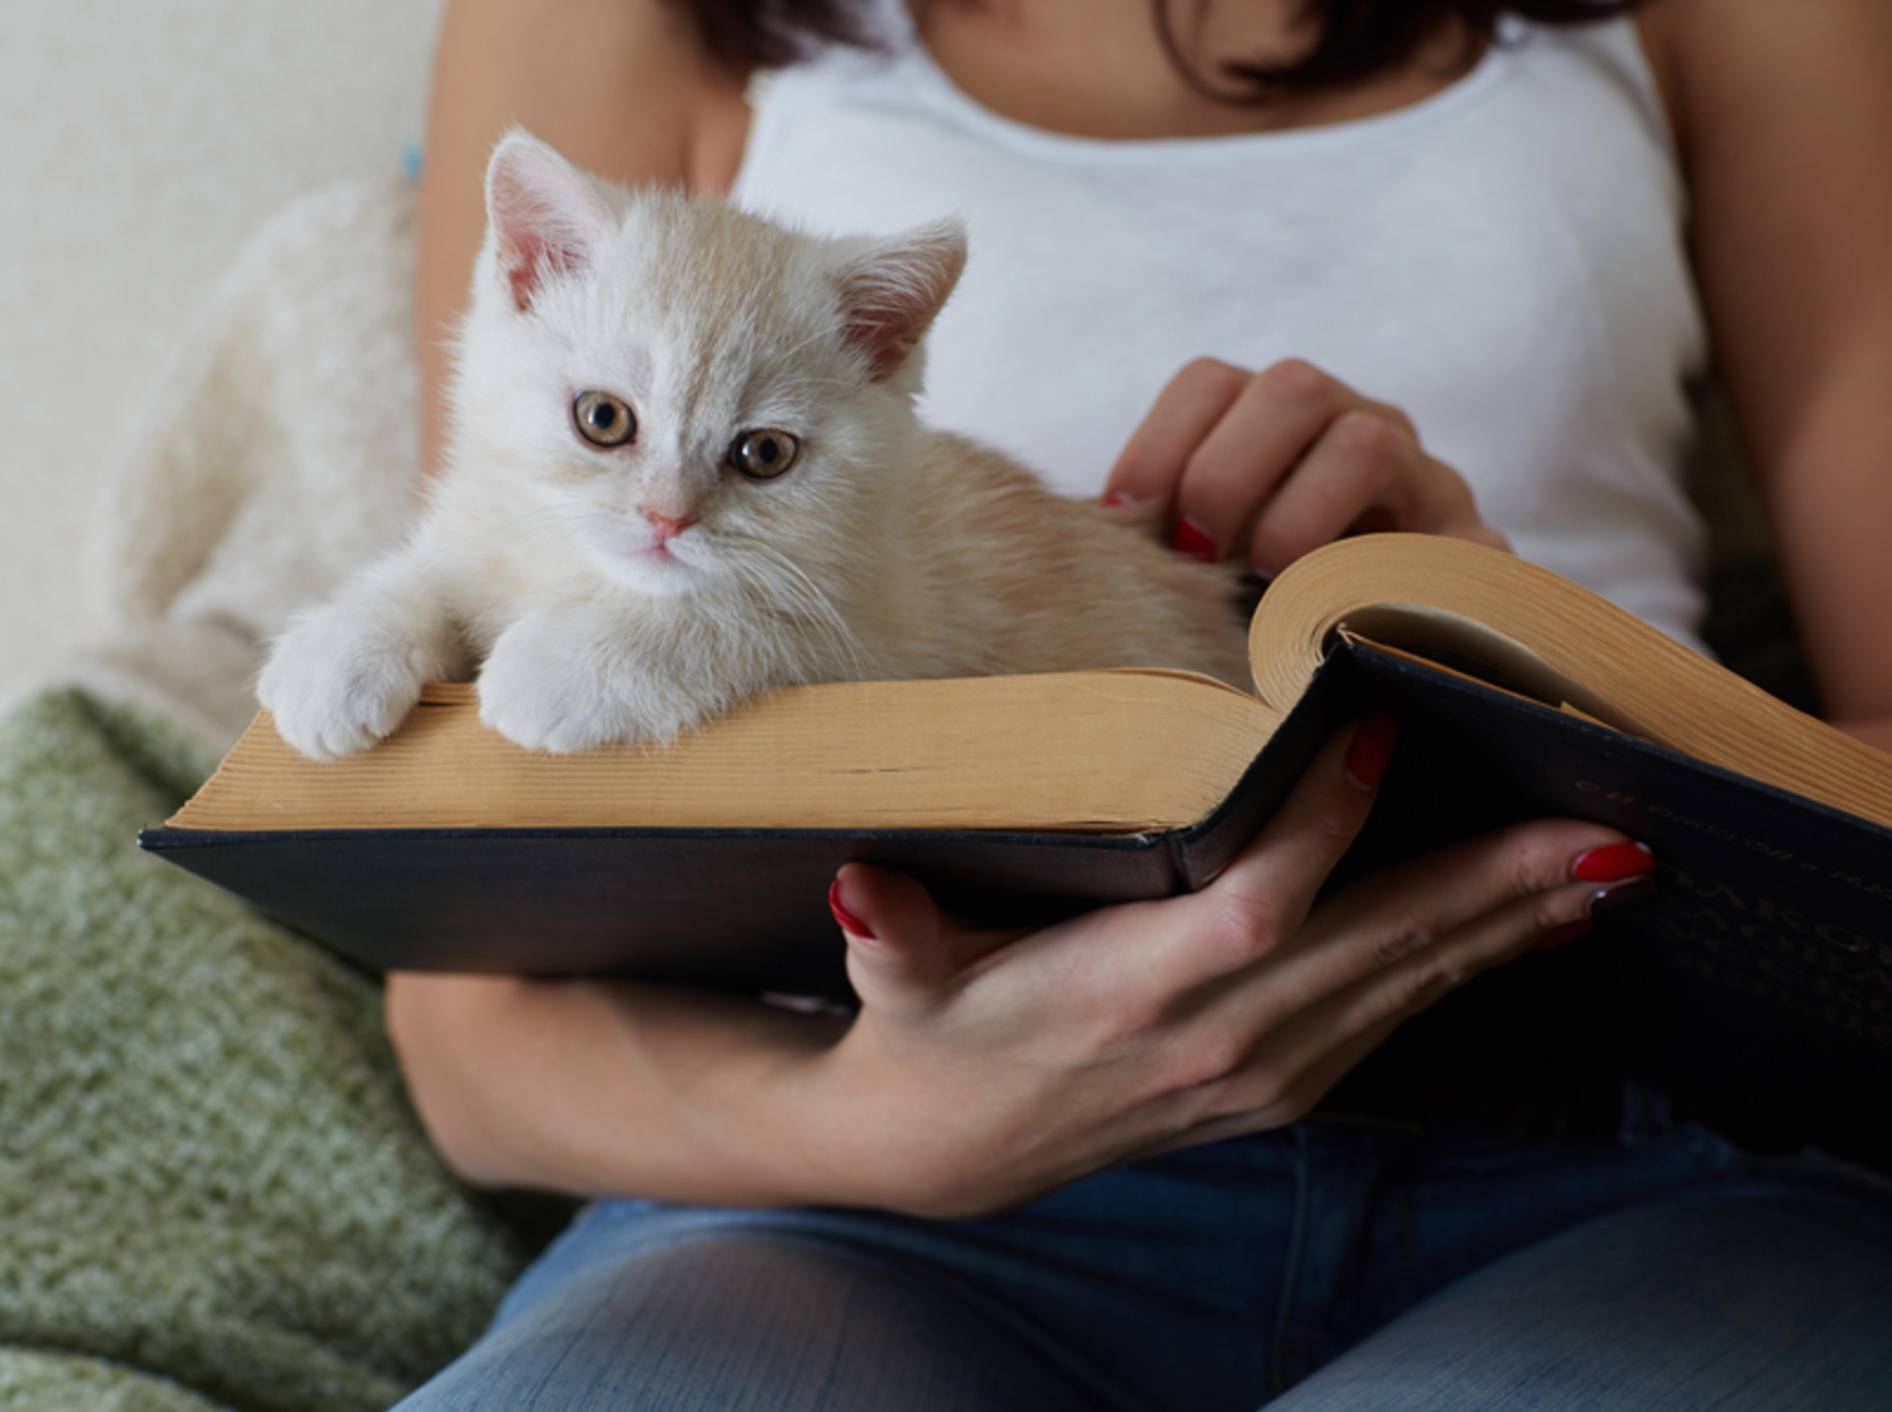 "Was liest du da? Kann ich mitlesen? Ach, ich bleib einfach hier liegen, das ist so schön gemütlich": Kleine Katze liebt Papier – Shutterstock / Demidov Sergey